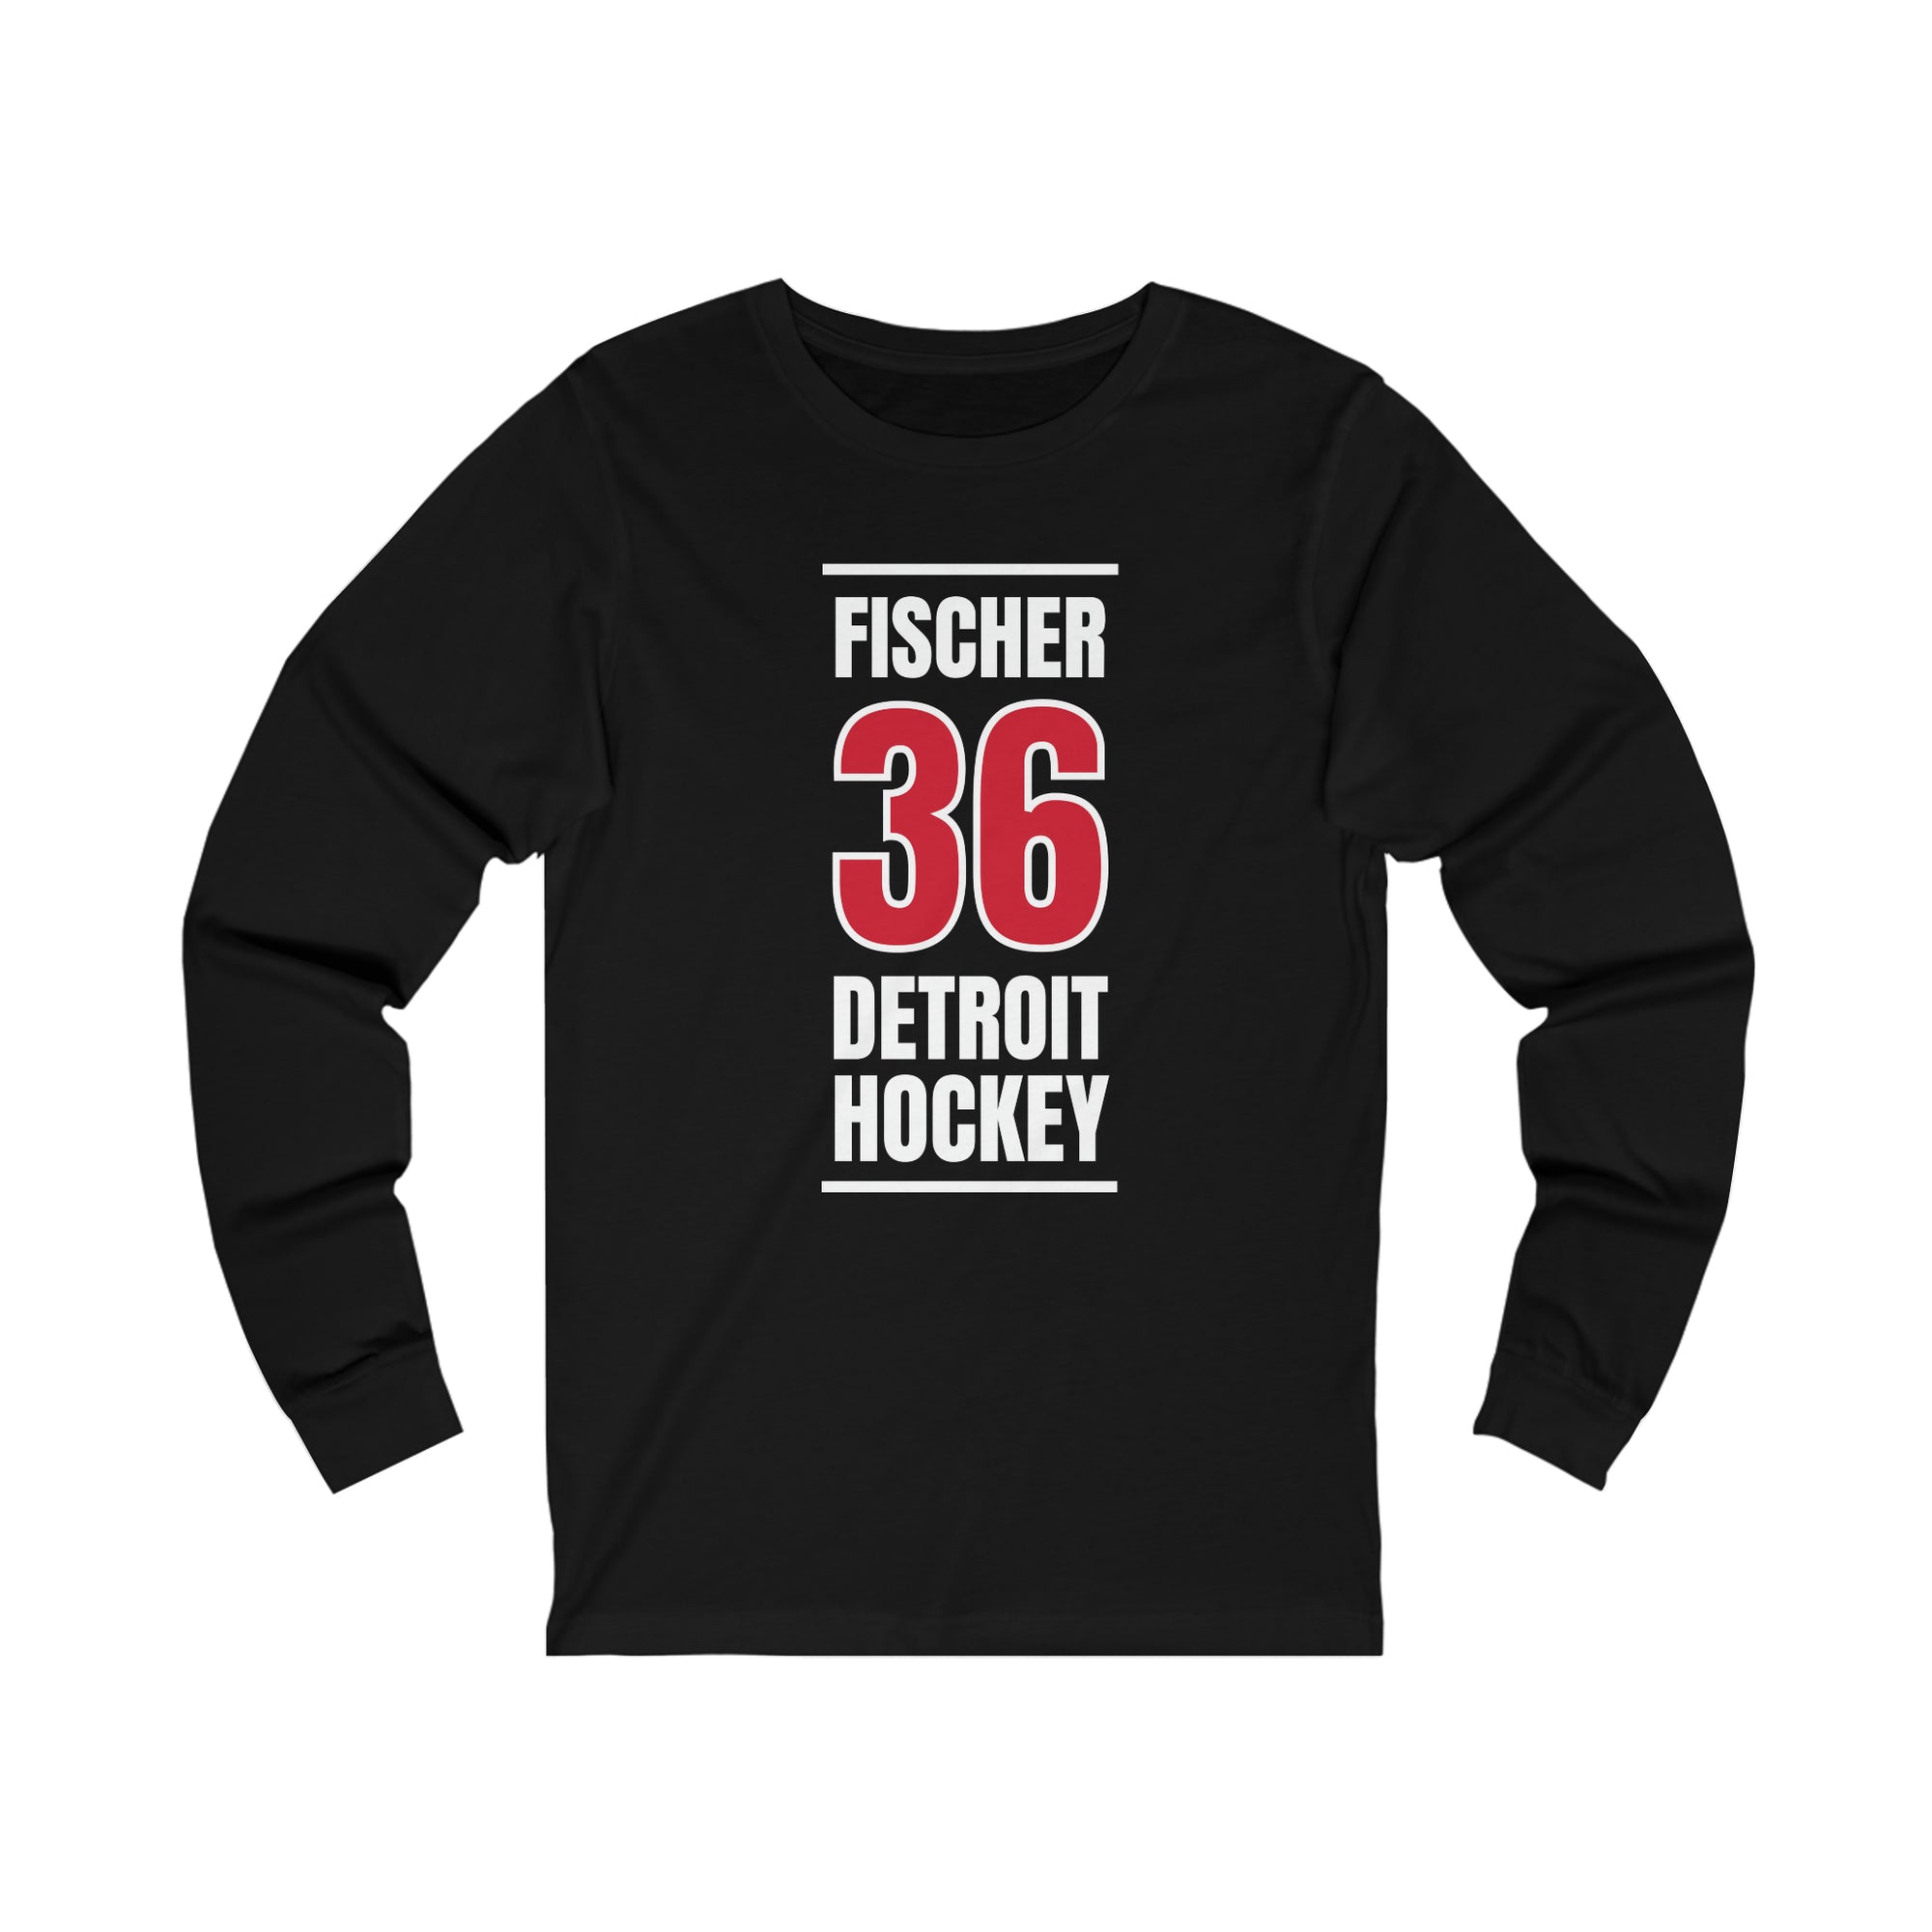 Fischer 36 Detroit Hockey Red Vertical Design Unisex Jersey Long Sleeve Shirt